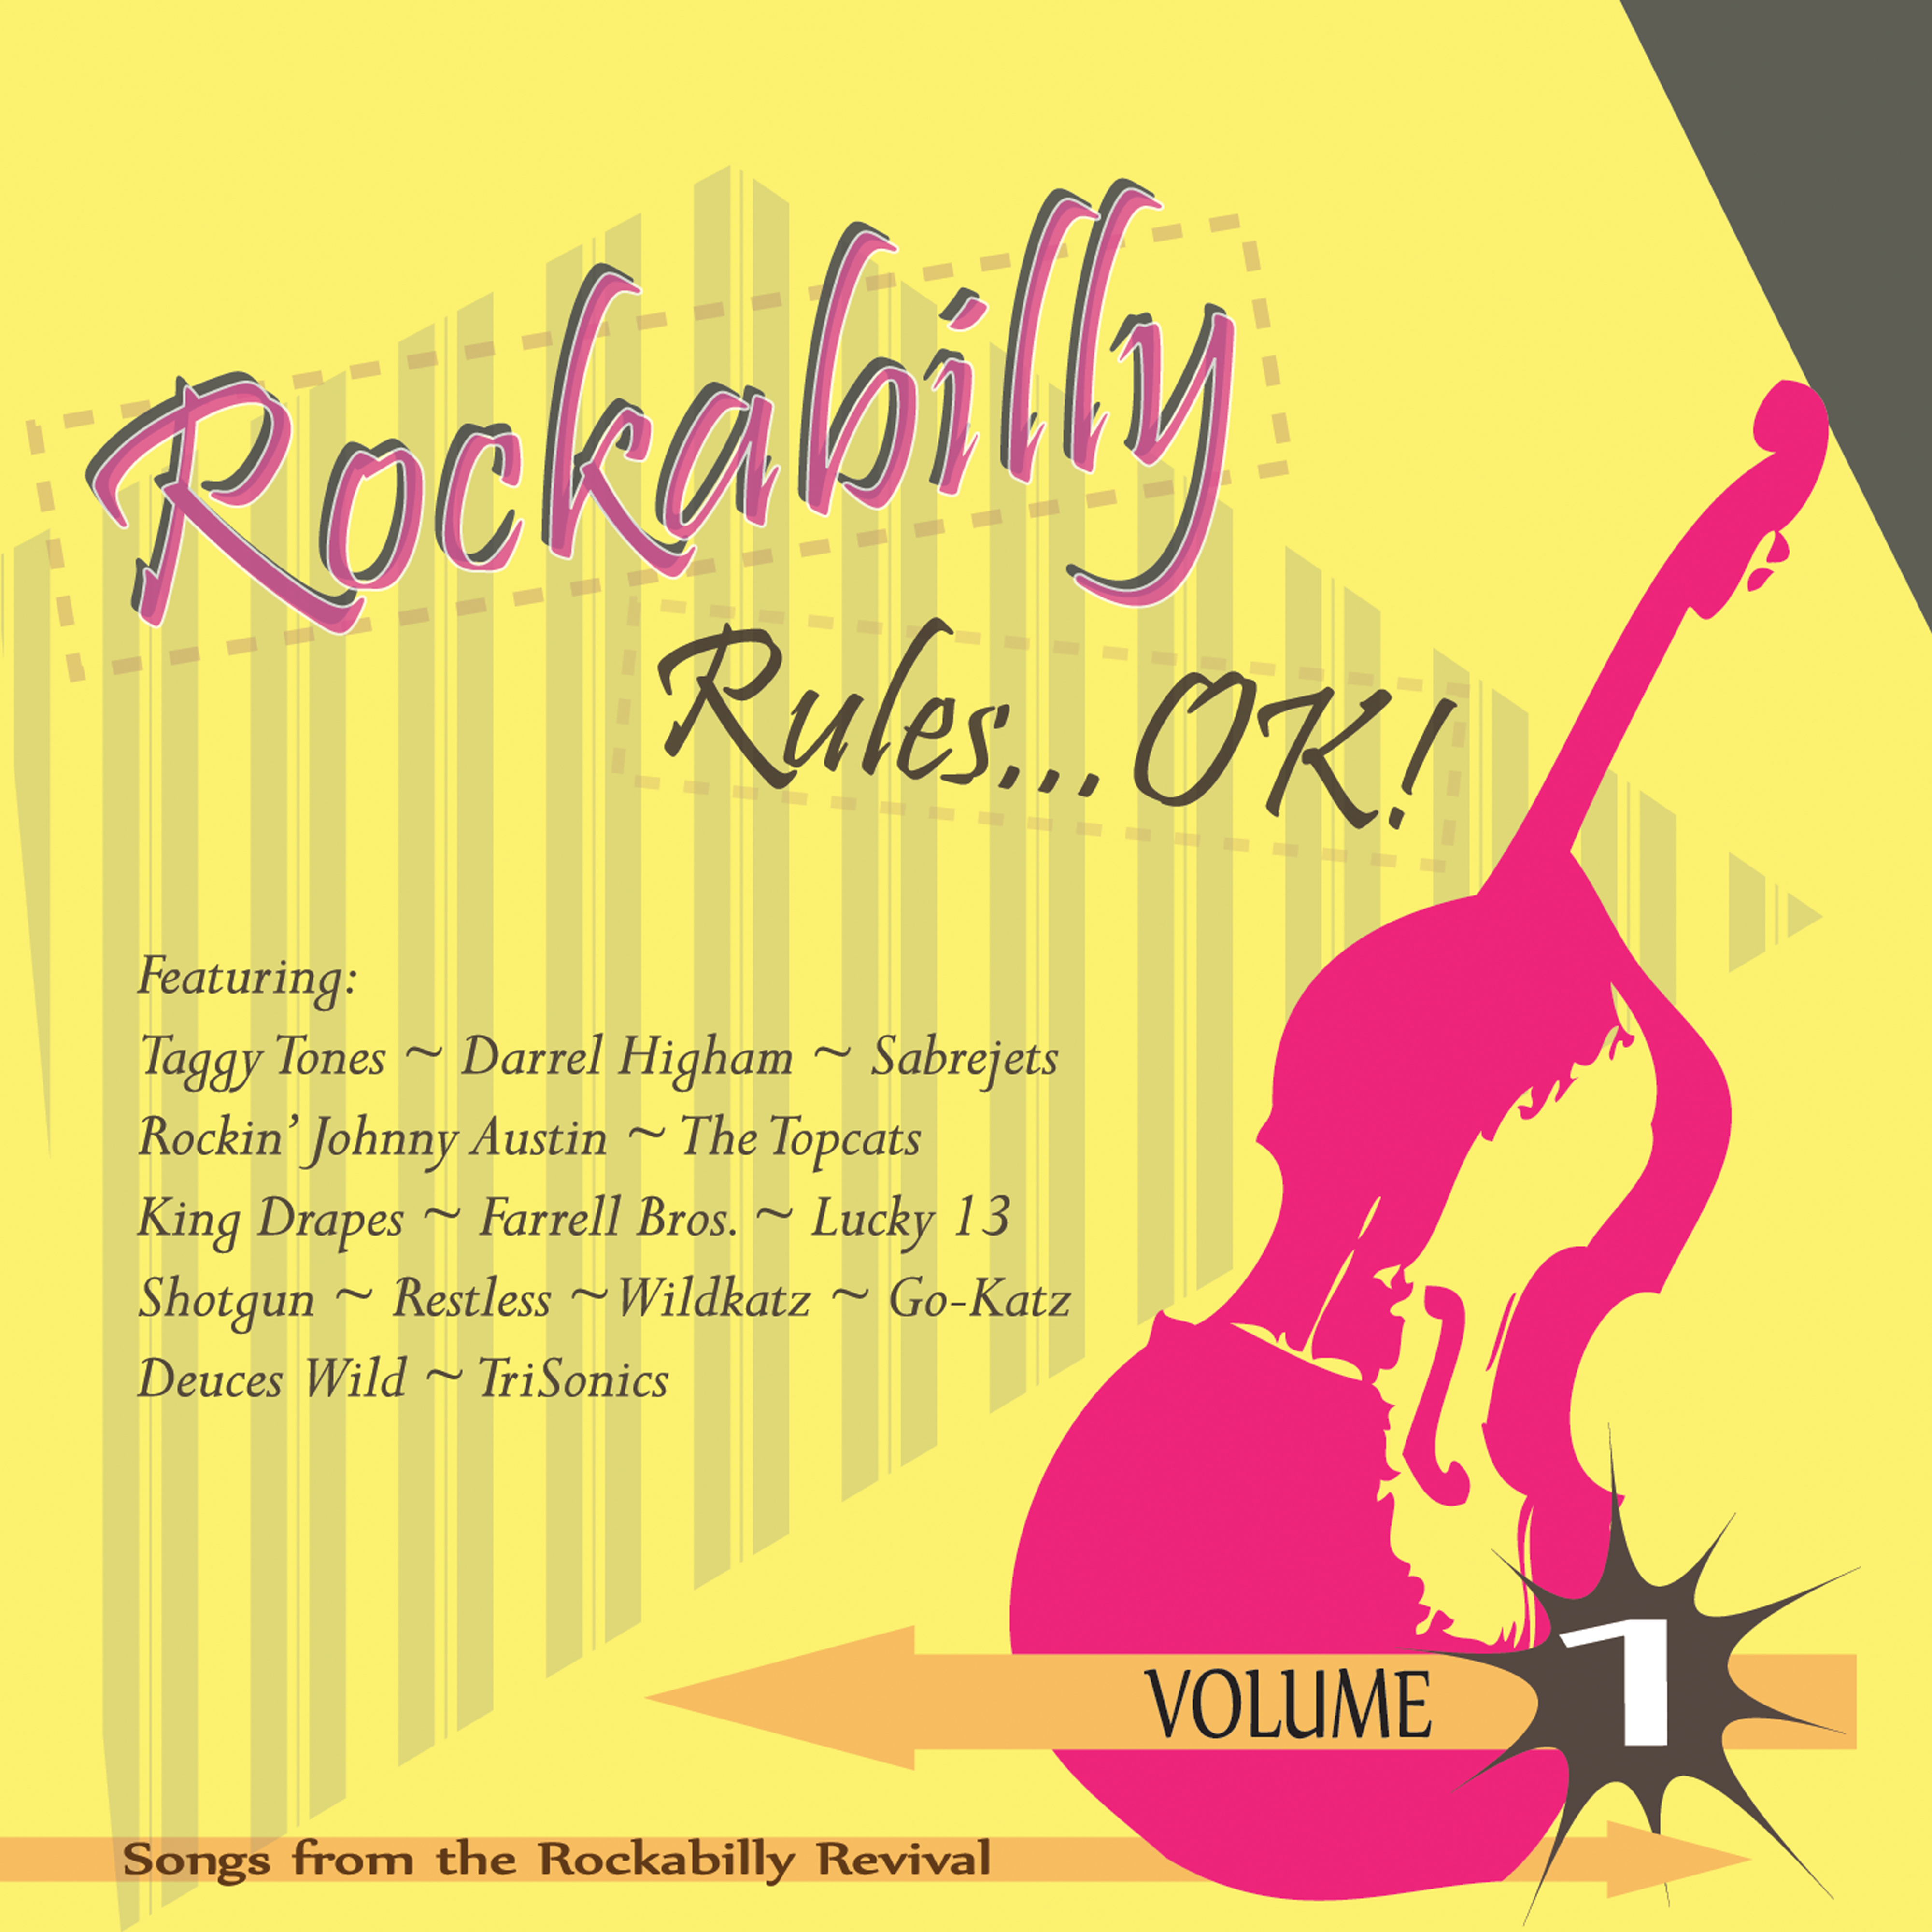 Rockabilly Rules OK